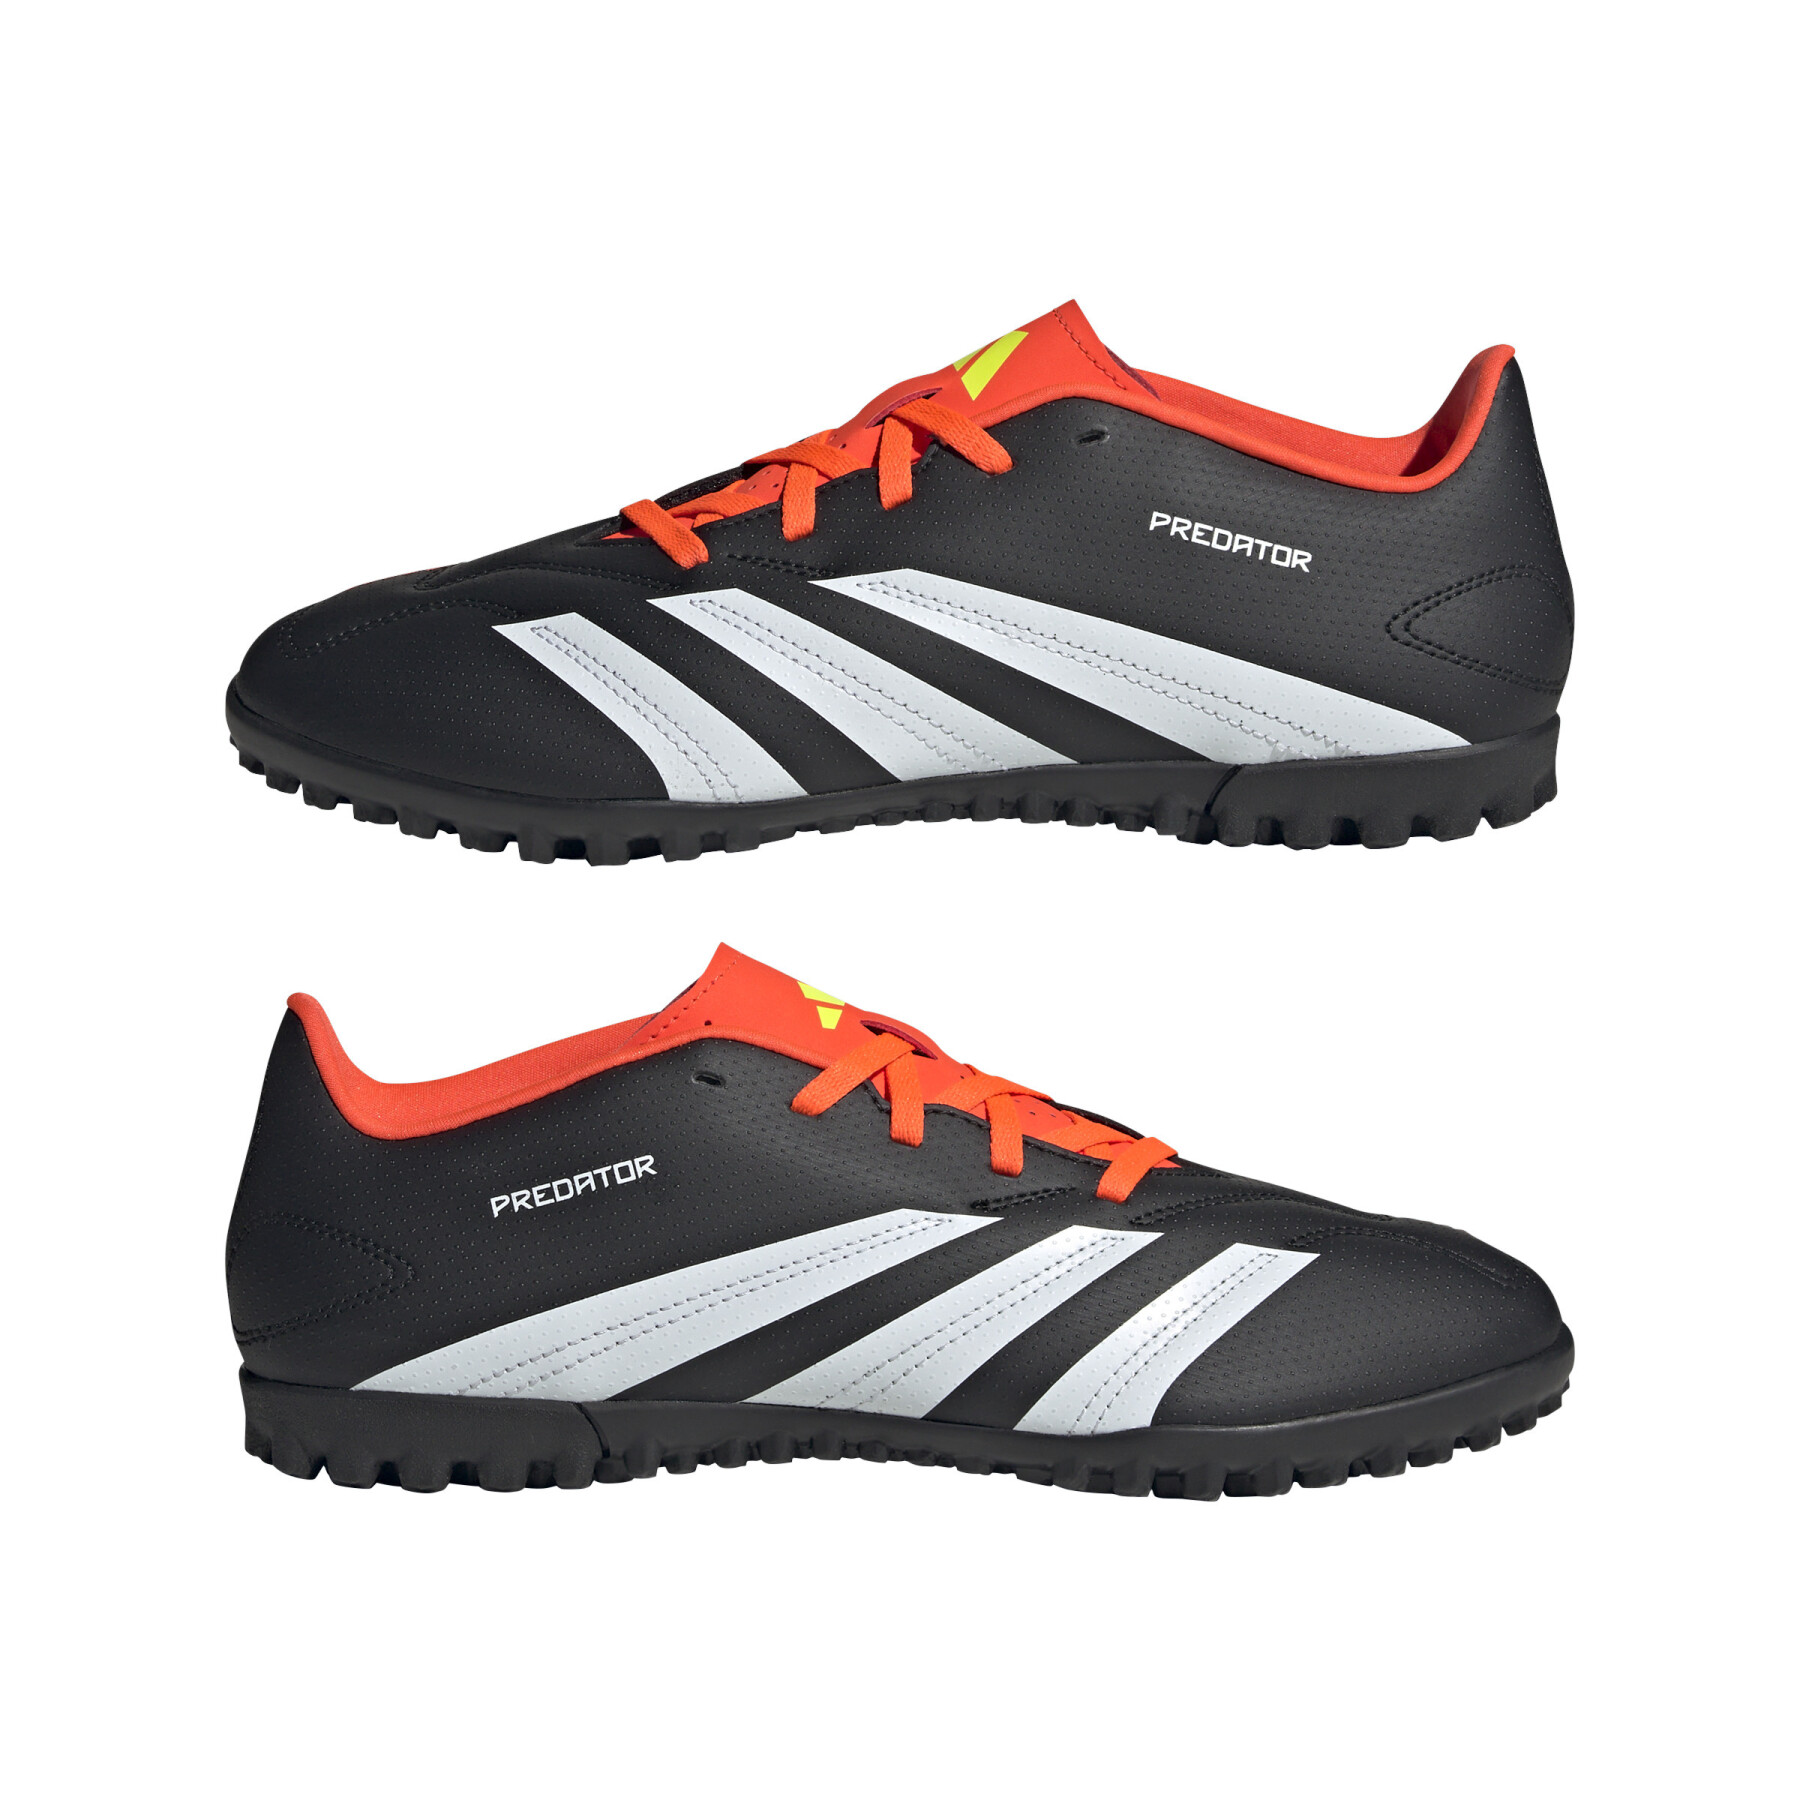 Sapatos de futebol adidas Predator Club TF